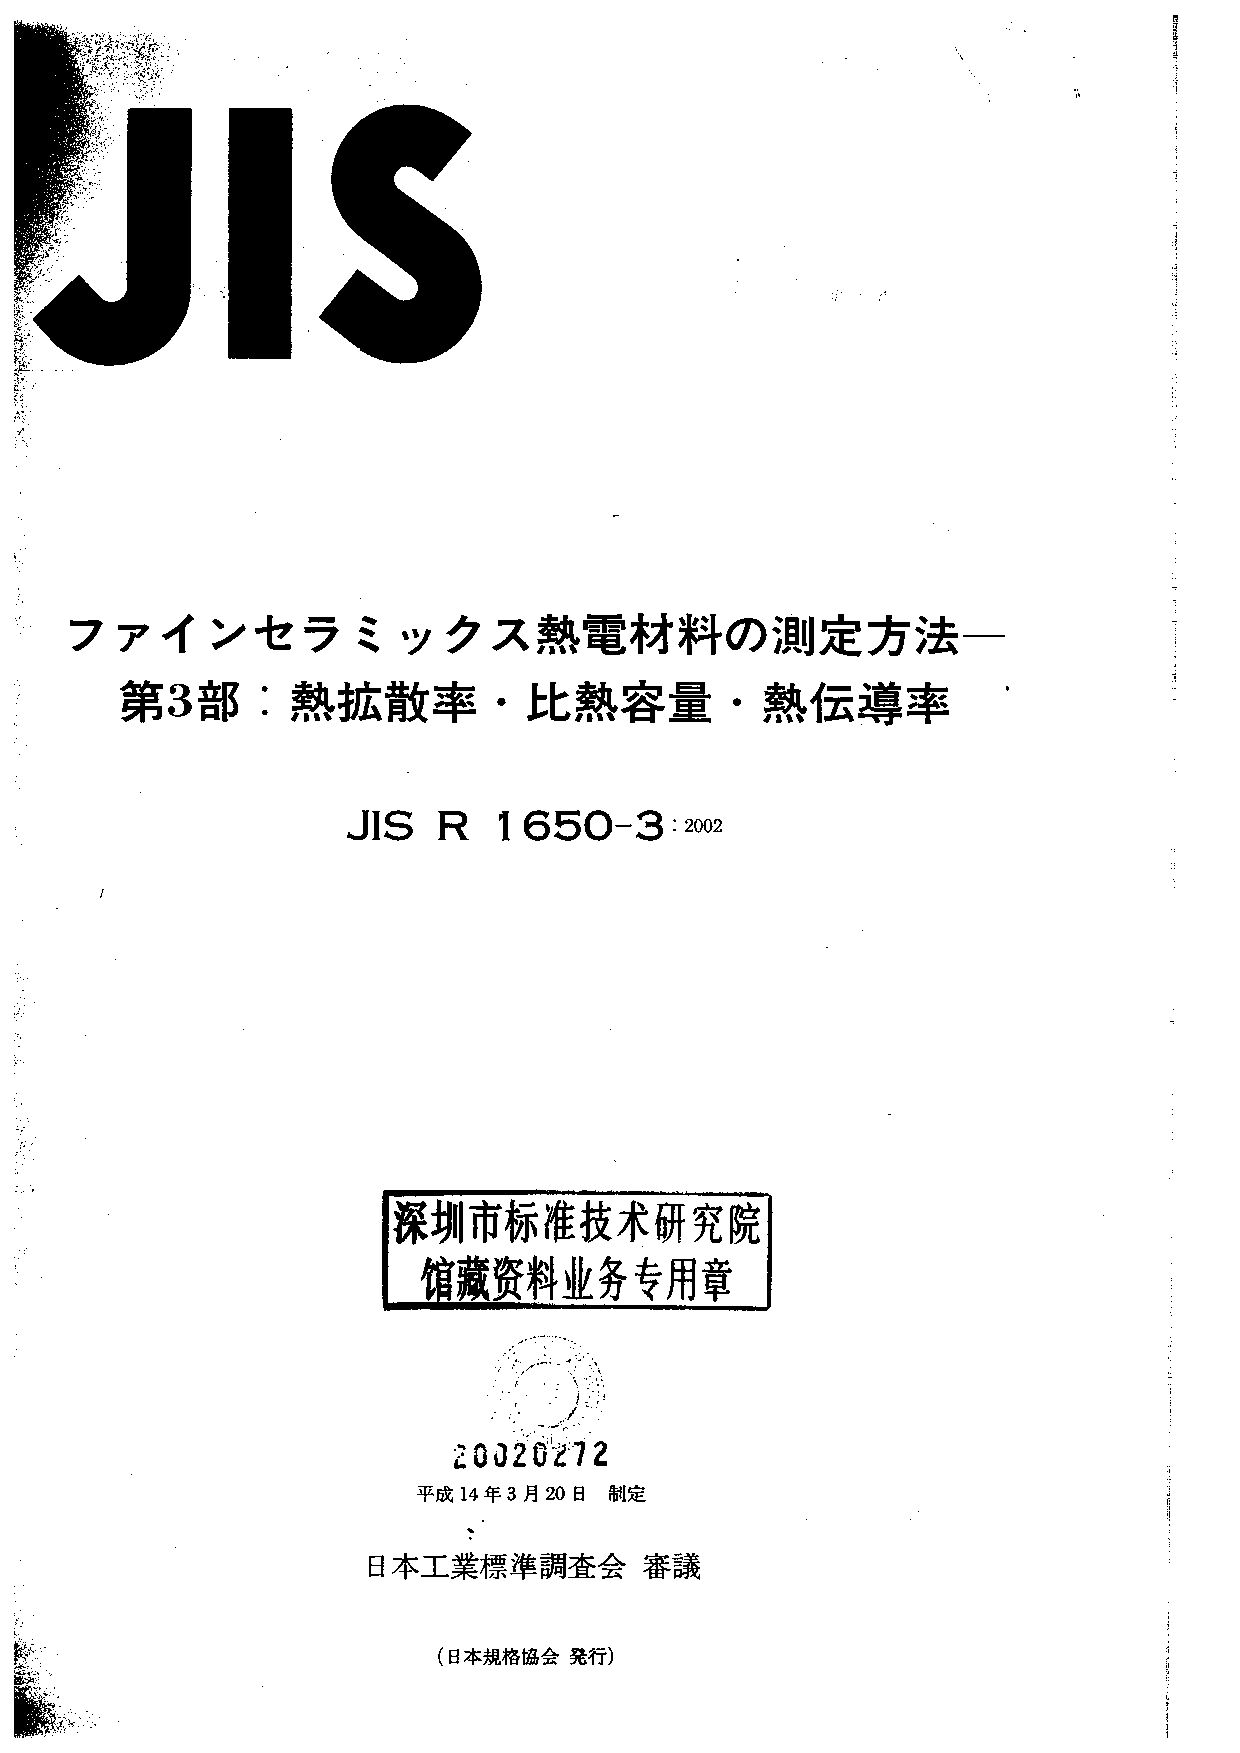 JIS R 1650-3:2002封面图